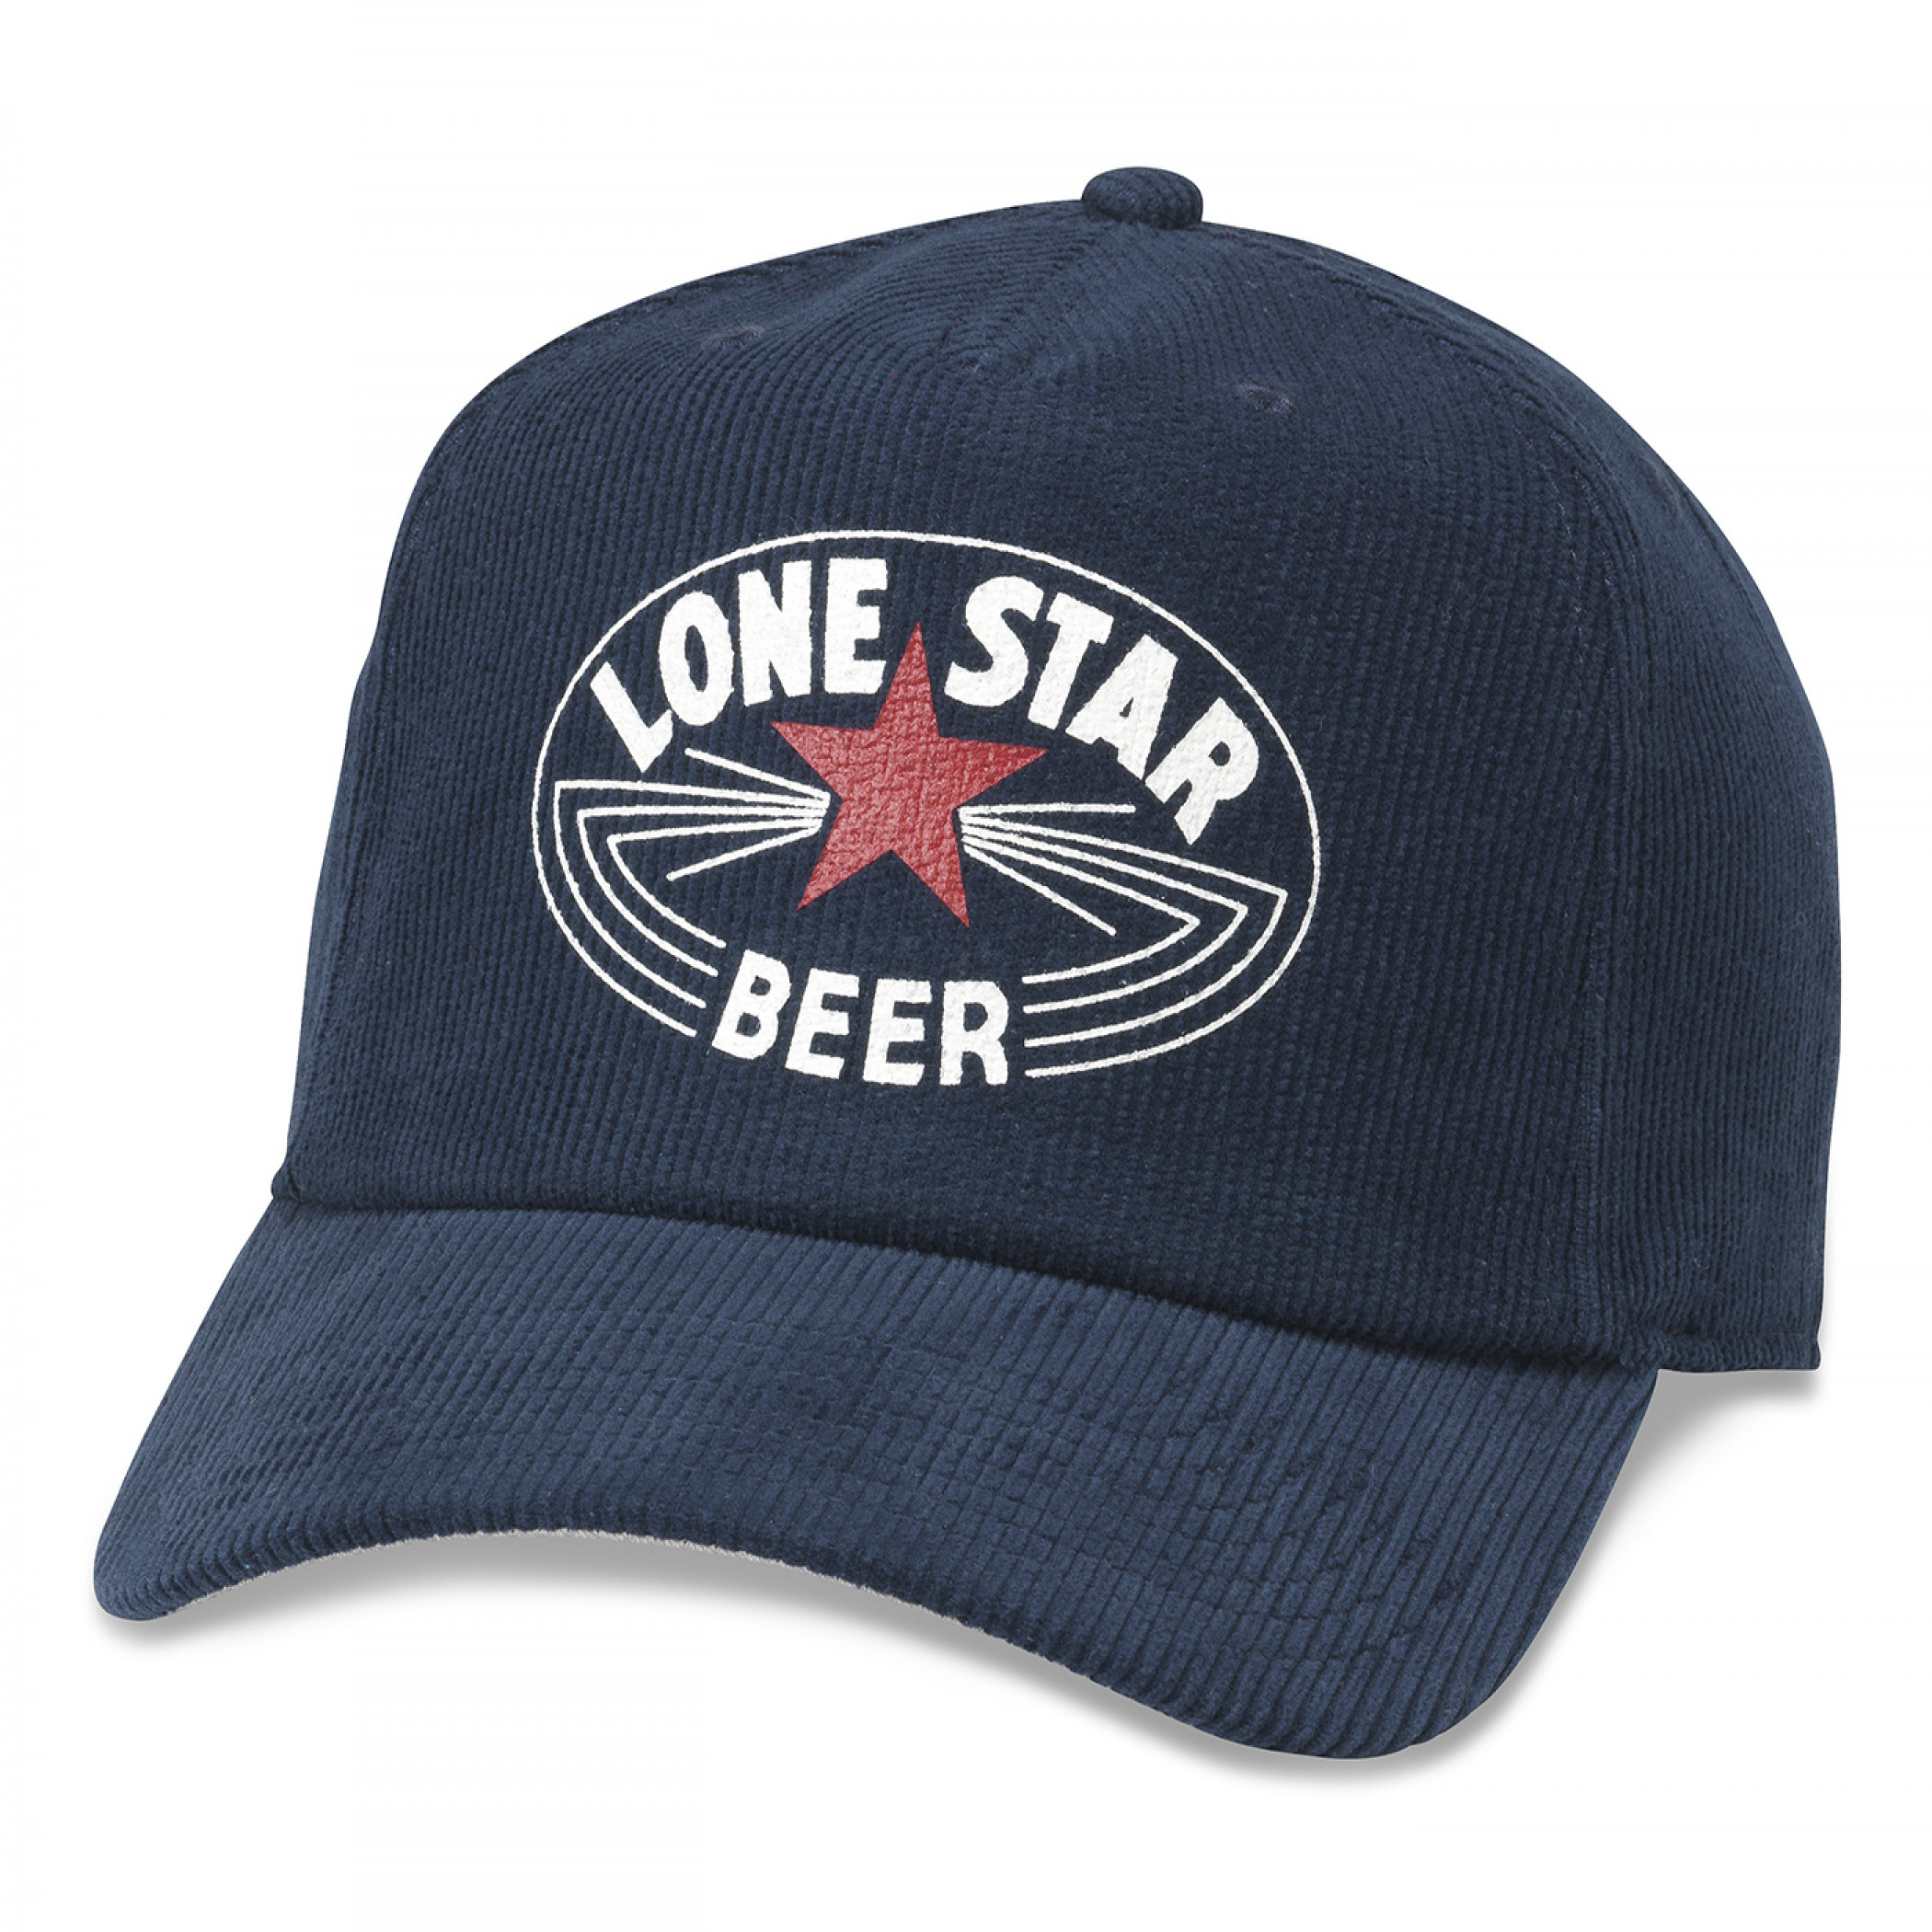 Lone Star Beer Printed Corduroy Hat